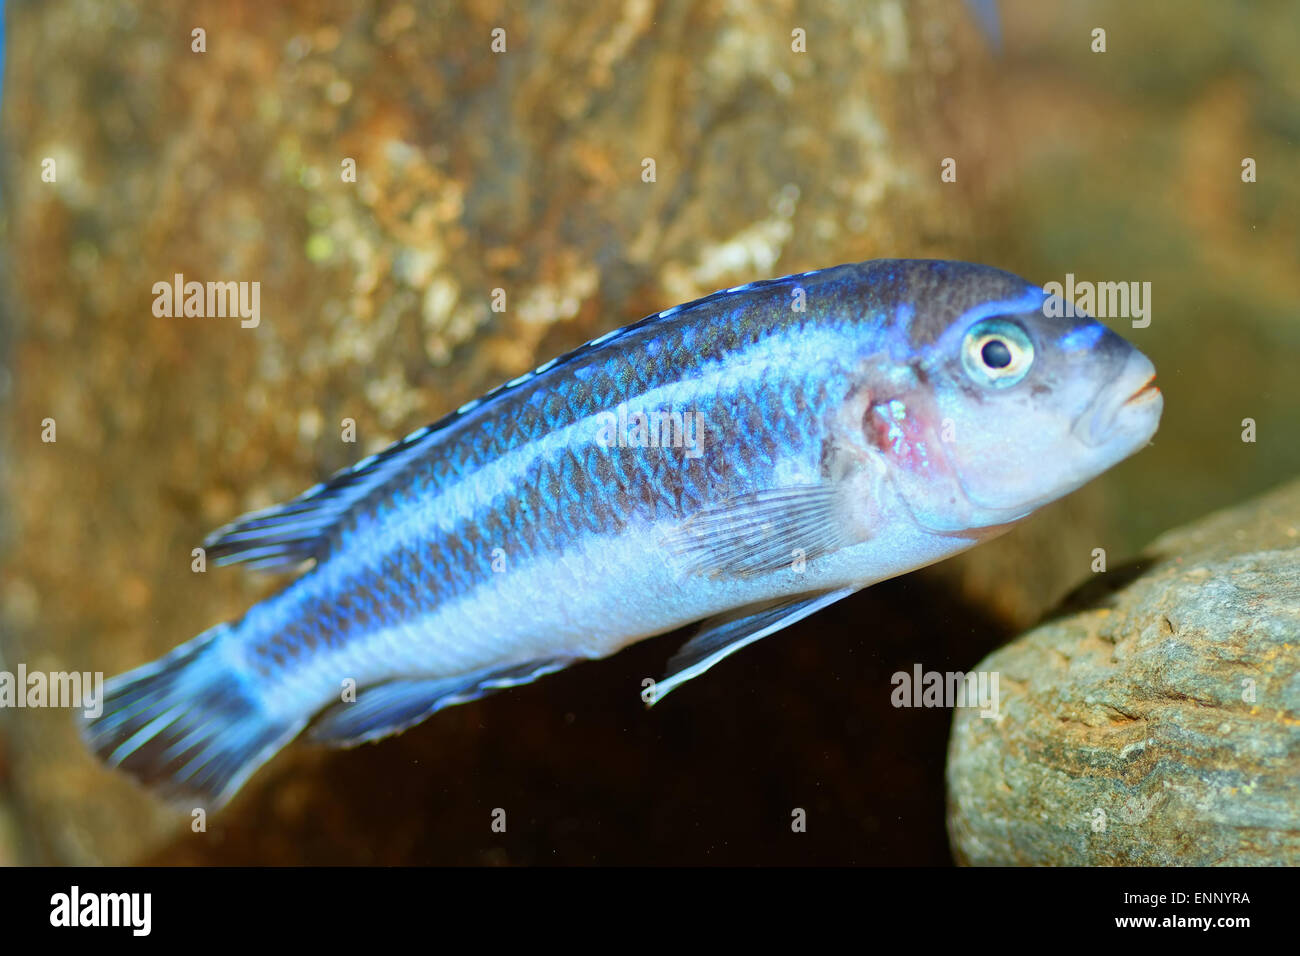 Aquarium fish from genus Melanochromis. Stock Photo